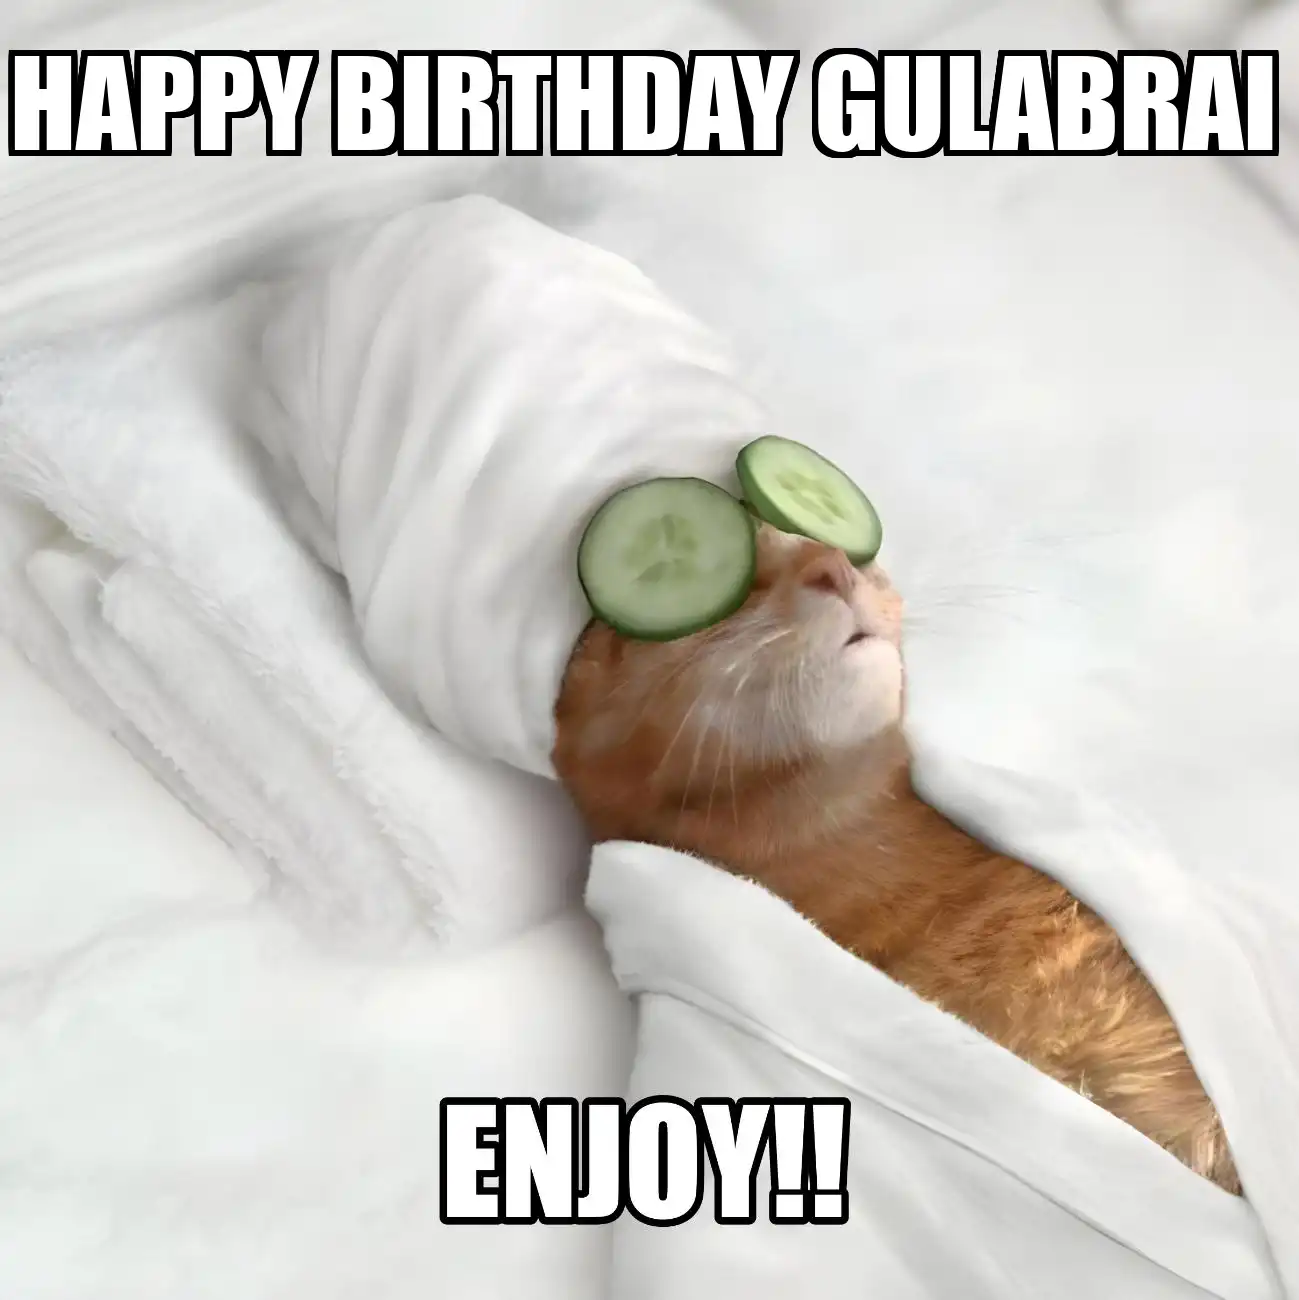 Happy Birthday Gulabrai Enjoy Cat Meme